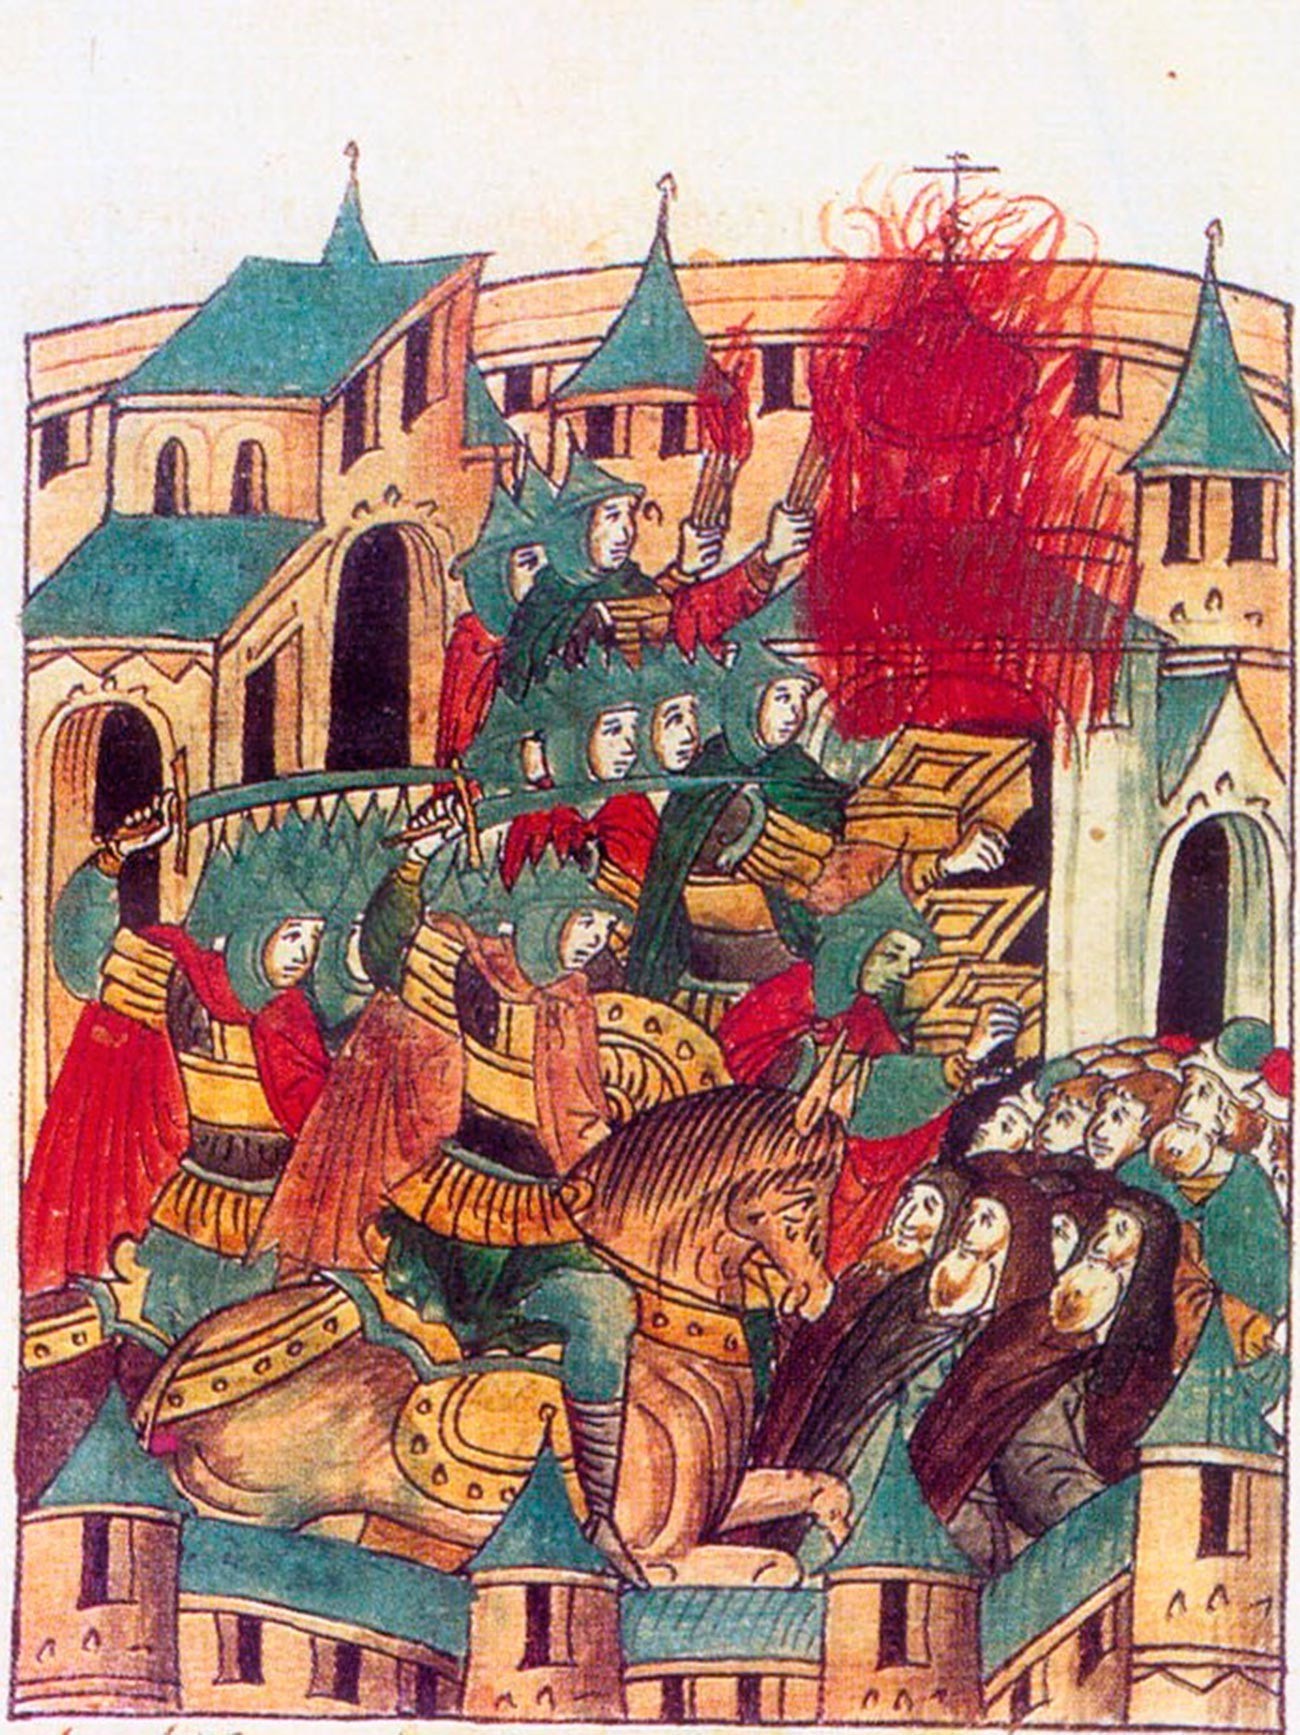 O saque de Súzdal por Batu Cã, em fevereiro de 1238, na invasão mongol da Rússia. Miniatura retirada de crônica do século 16.